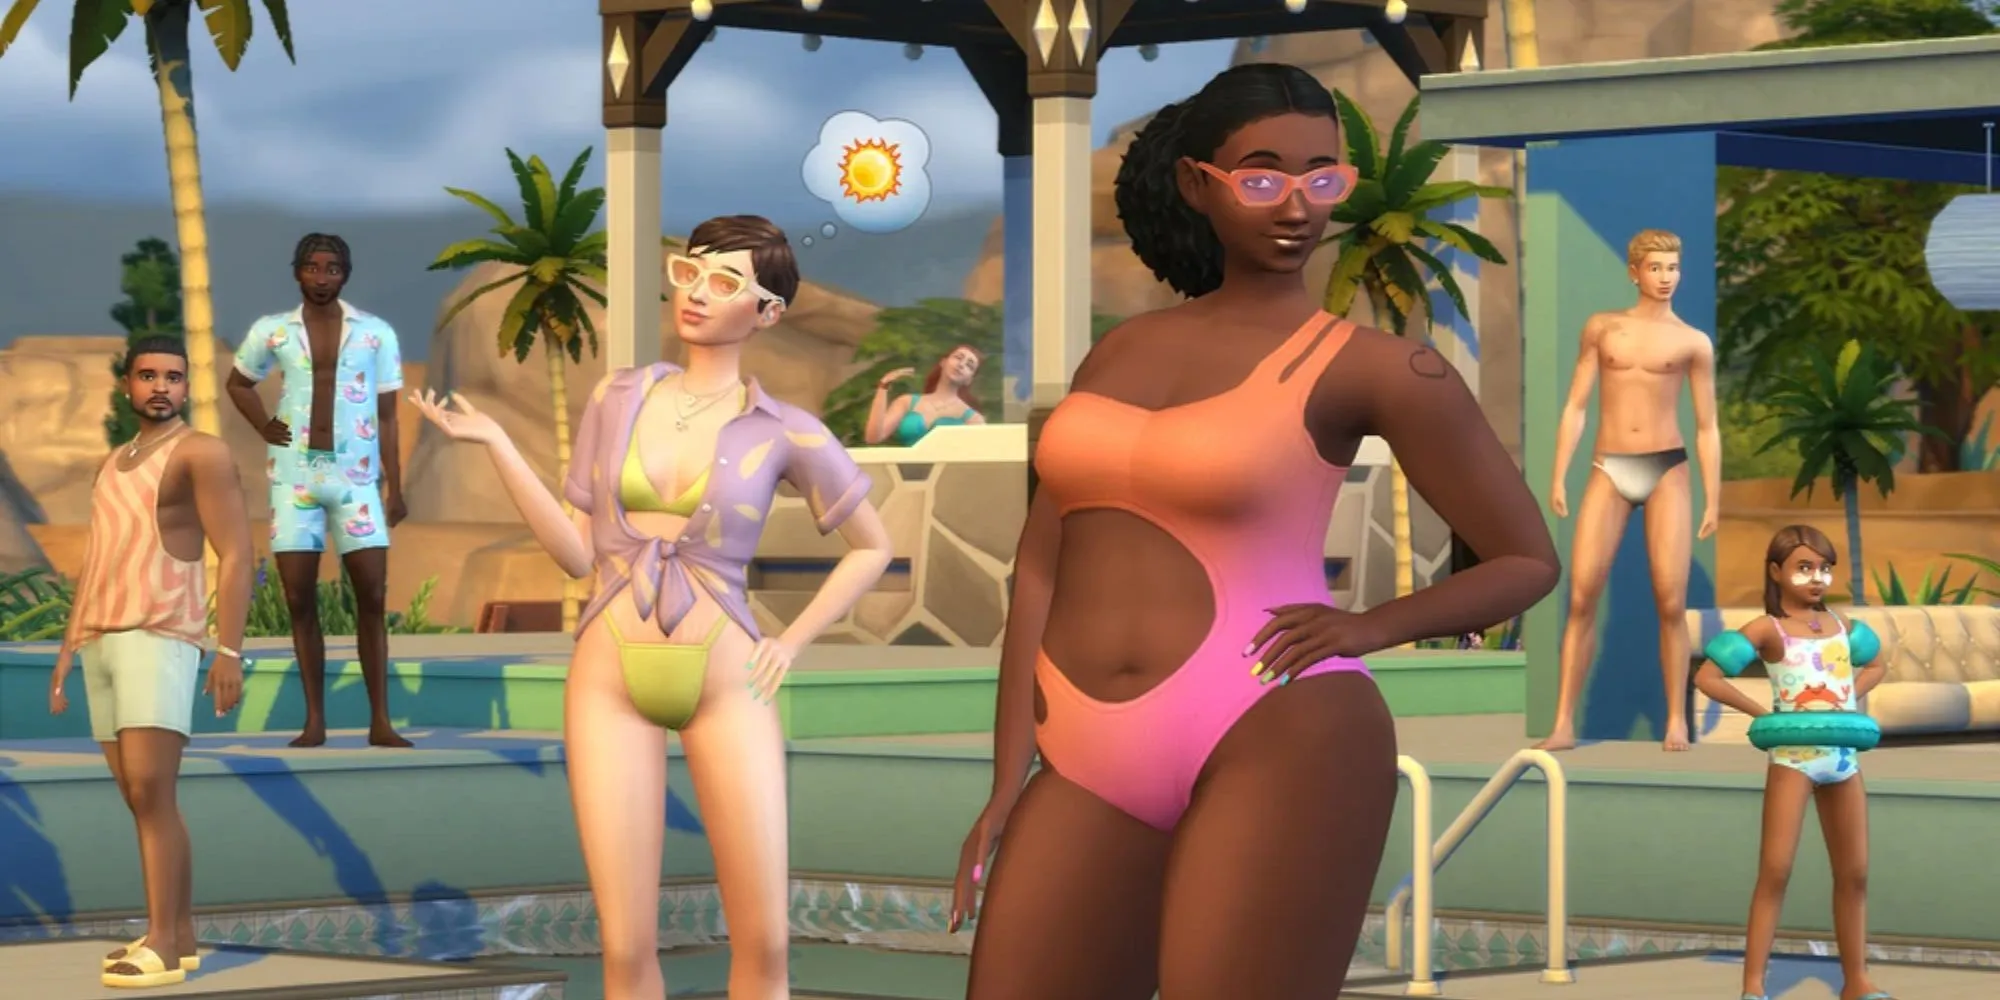 Sims 4 Poolside Splash Kit: Шесть Симов моделируют разную пляжную одежду из набора, включая ребенка на надувном круге и нарукавниках